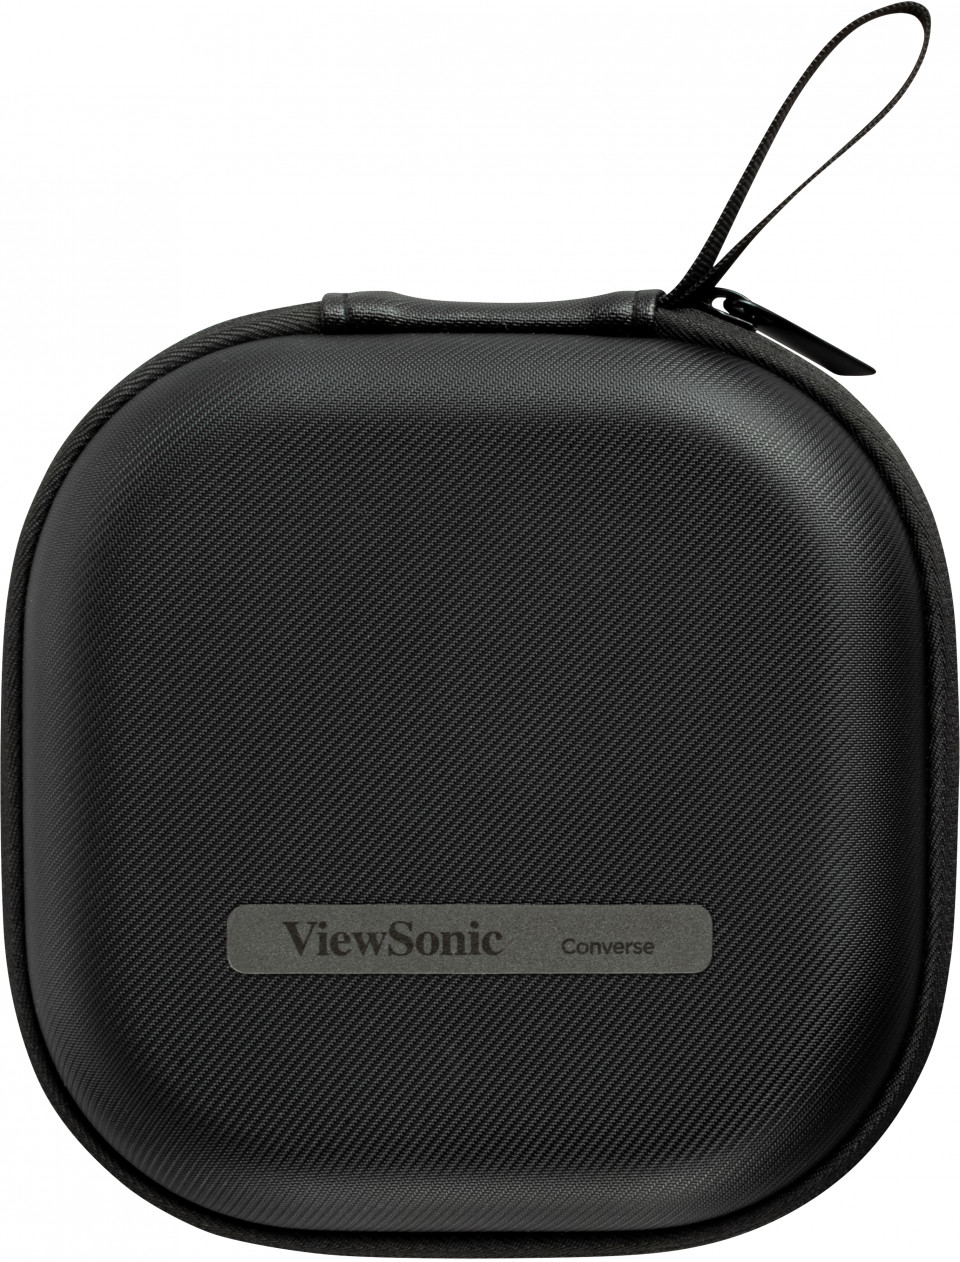 ViewSonic VB-AUD-201 Konferenz-Freisprecheinrichtung - Bluetooth - USB